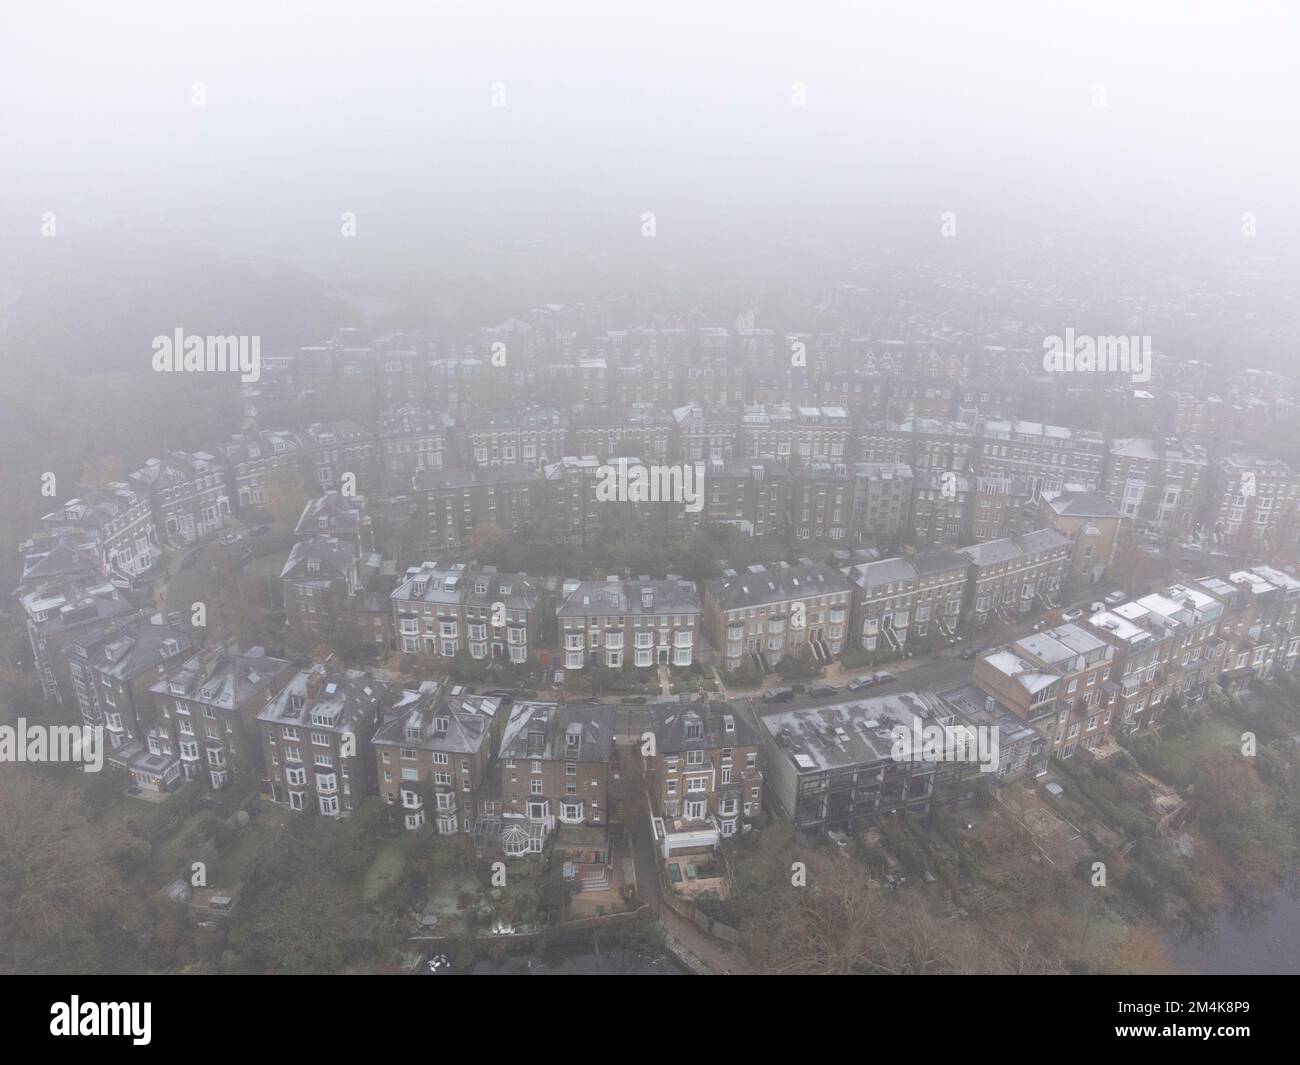 Hampstead Heath è coperto di gelo e nebbia pesante questa mattina, come visto dall'alto. Immagine scattata il 9th dicembre 2022. © Belinda Jiao jiao.bilin@gmail.co Foto Stock